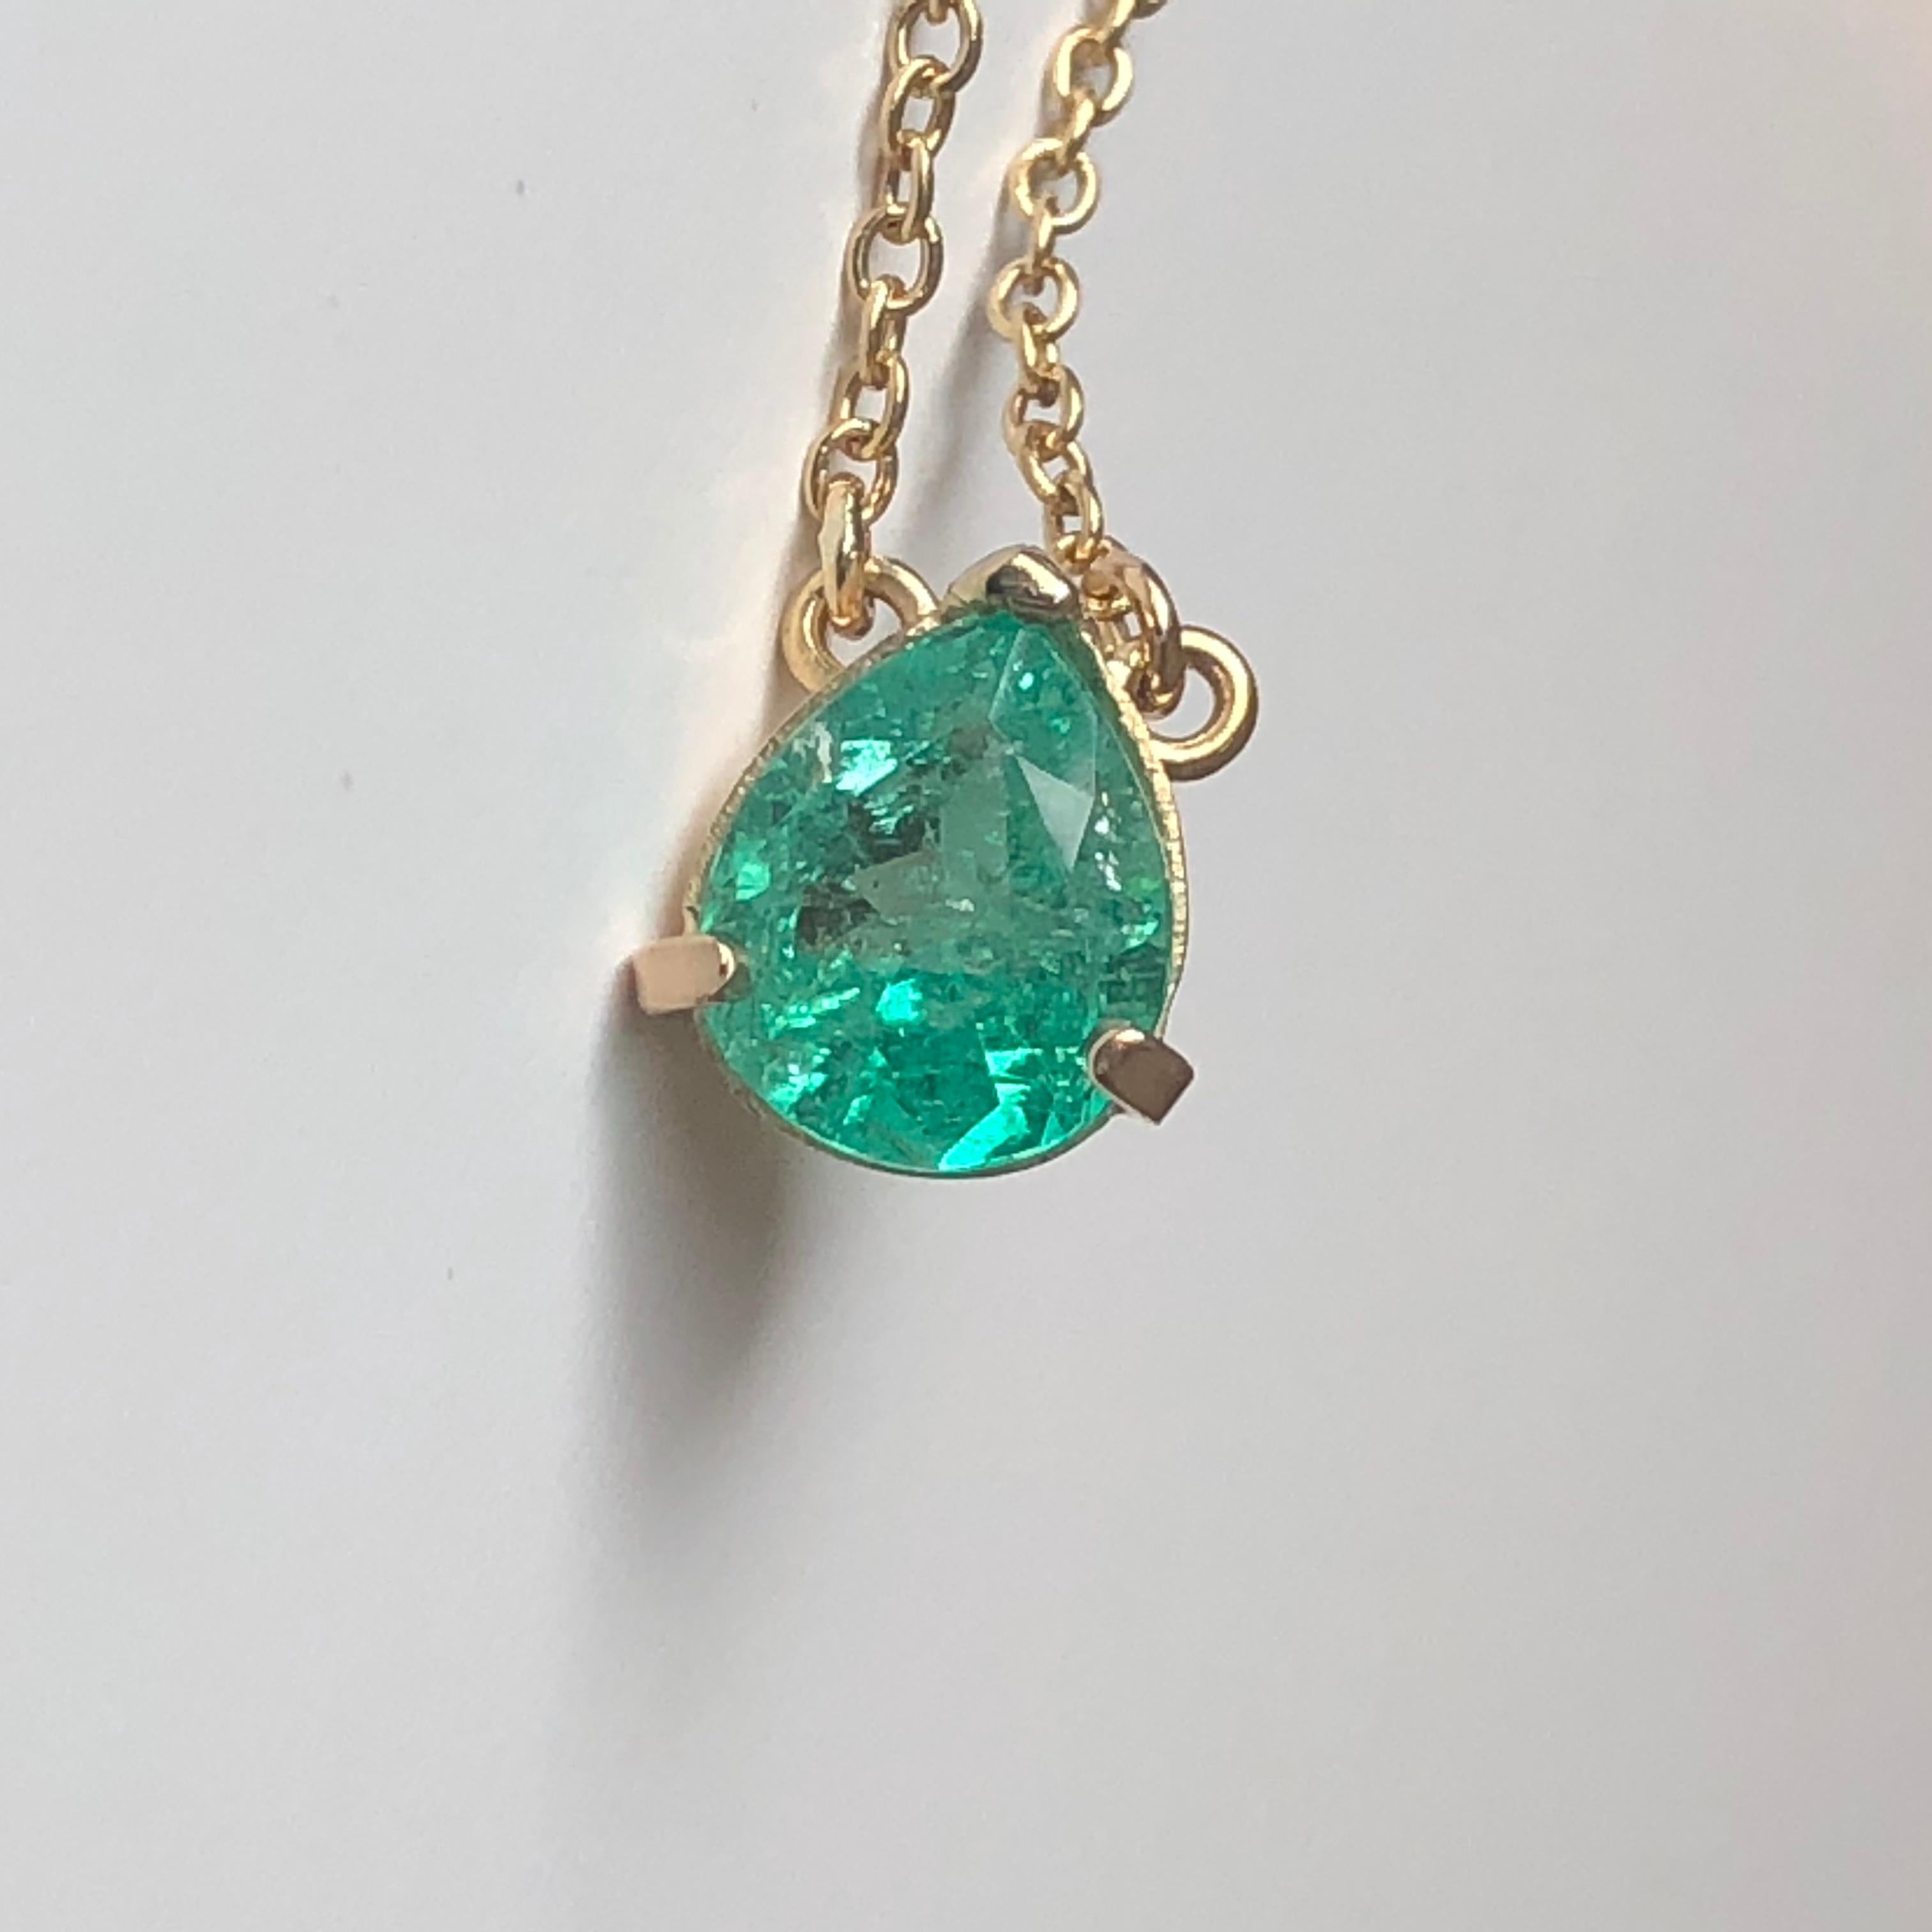 Emerald Cut Emeralds Maravellous 2.25 Carat Colombian Emerald Solitaire Pendant Necklace 18K For Sale